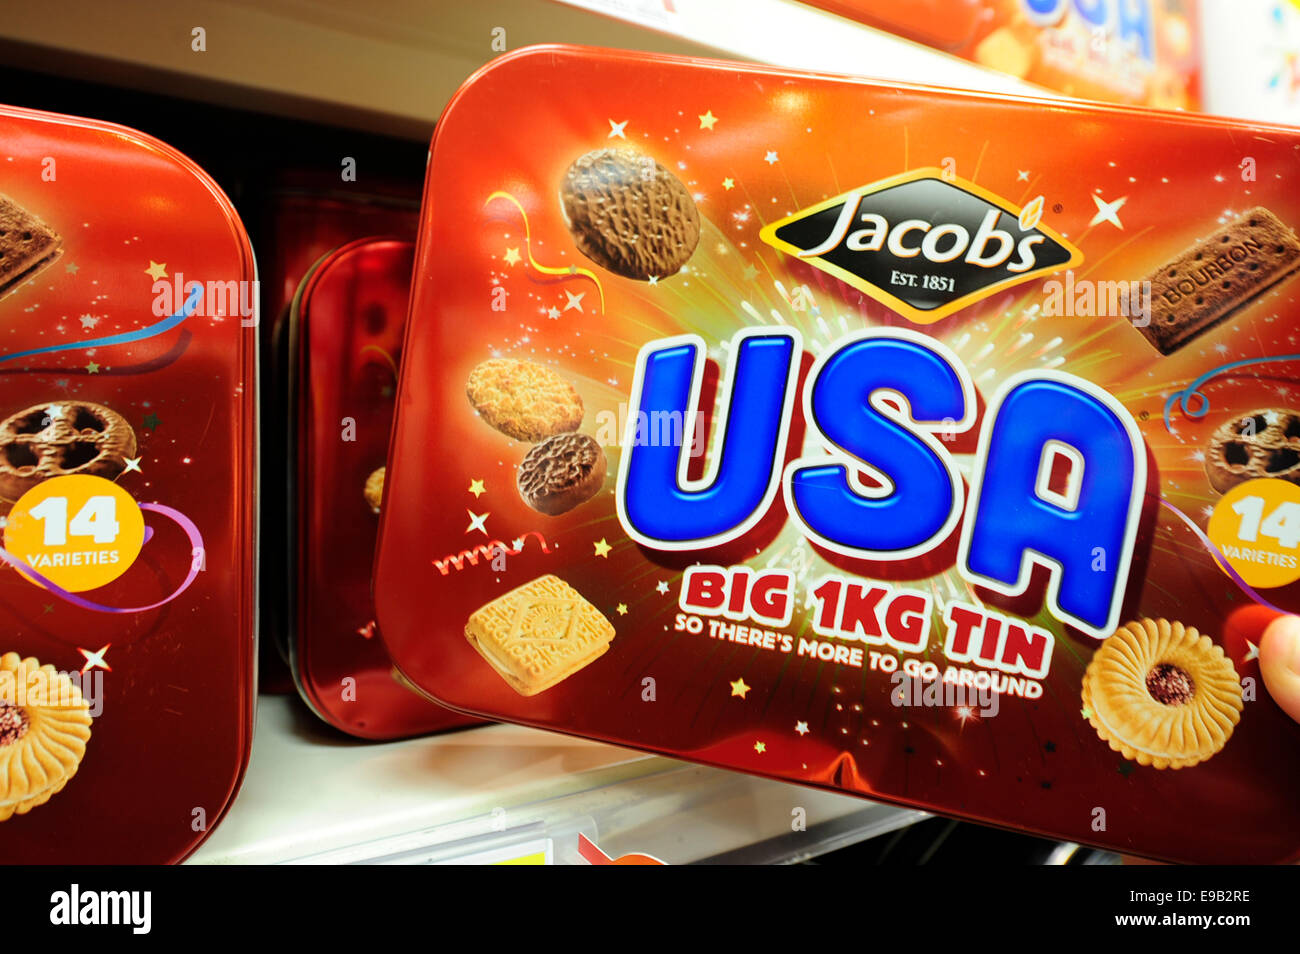 Jacobs USA marque biscuit été pris sur étagère (reportage) (Modèle 1992) Banque D'Images